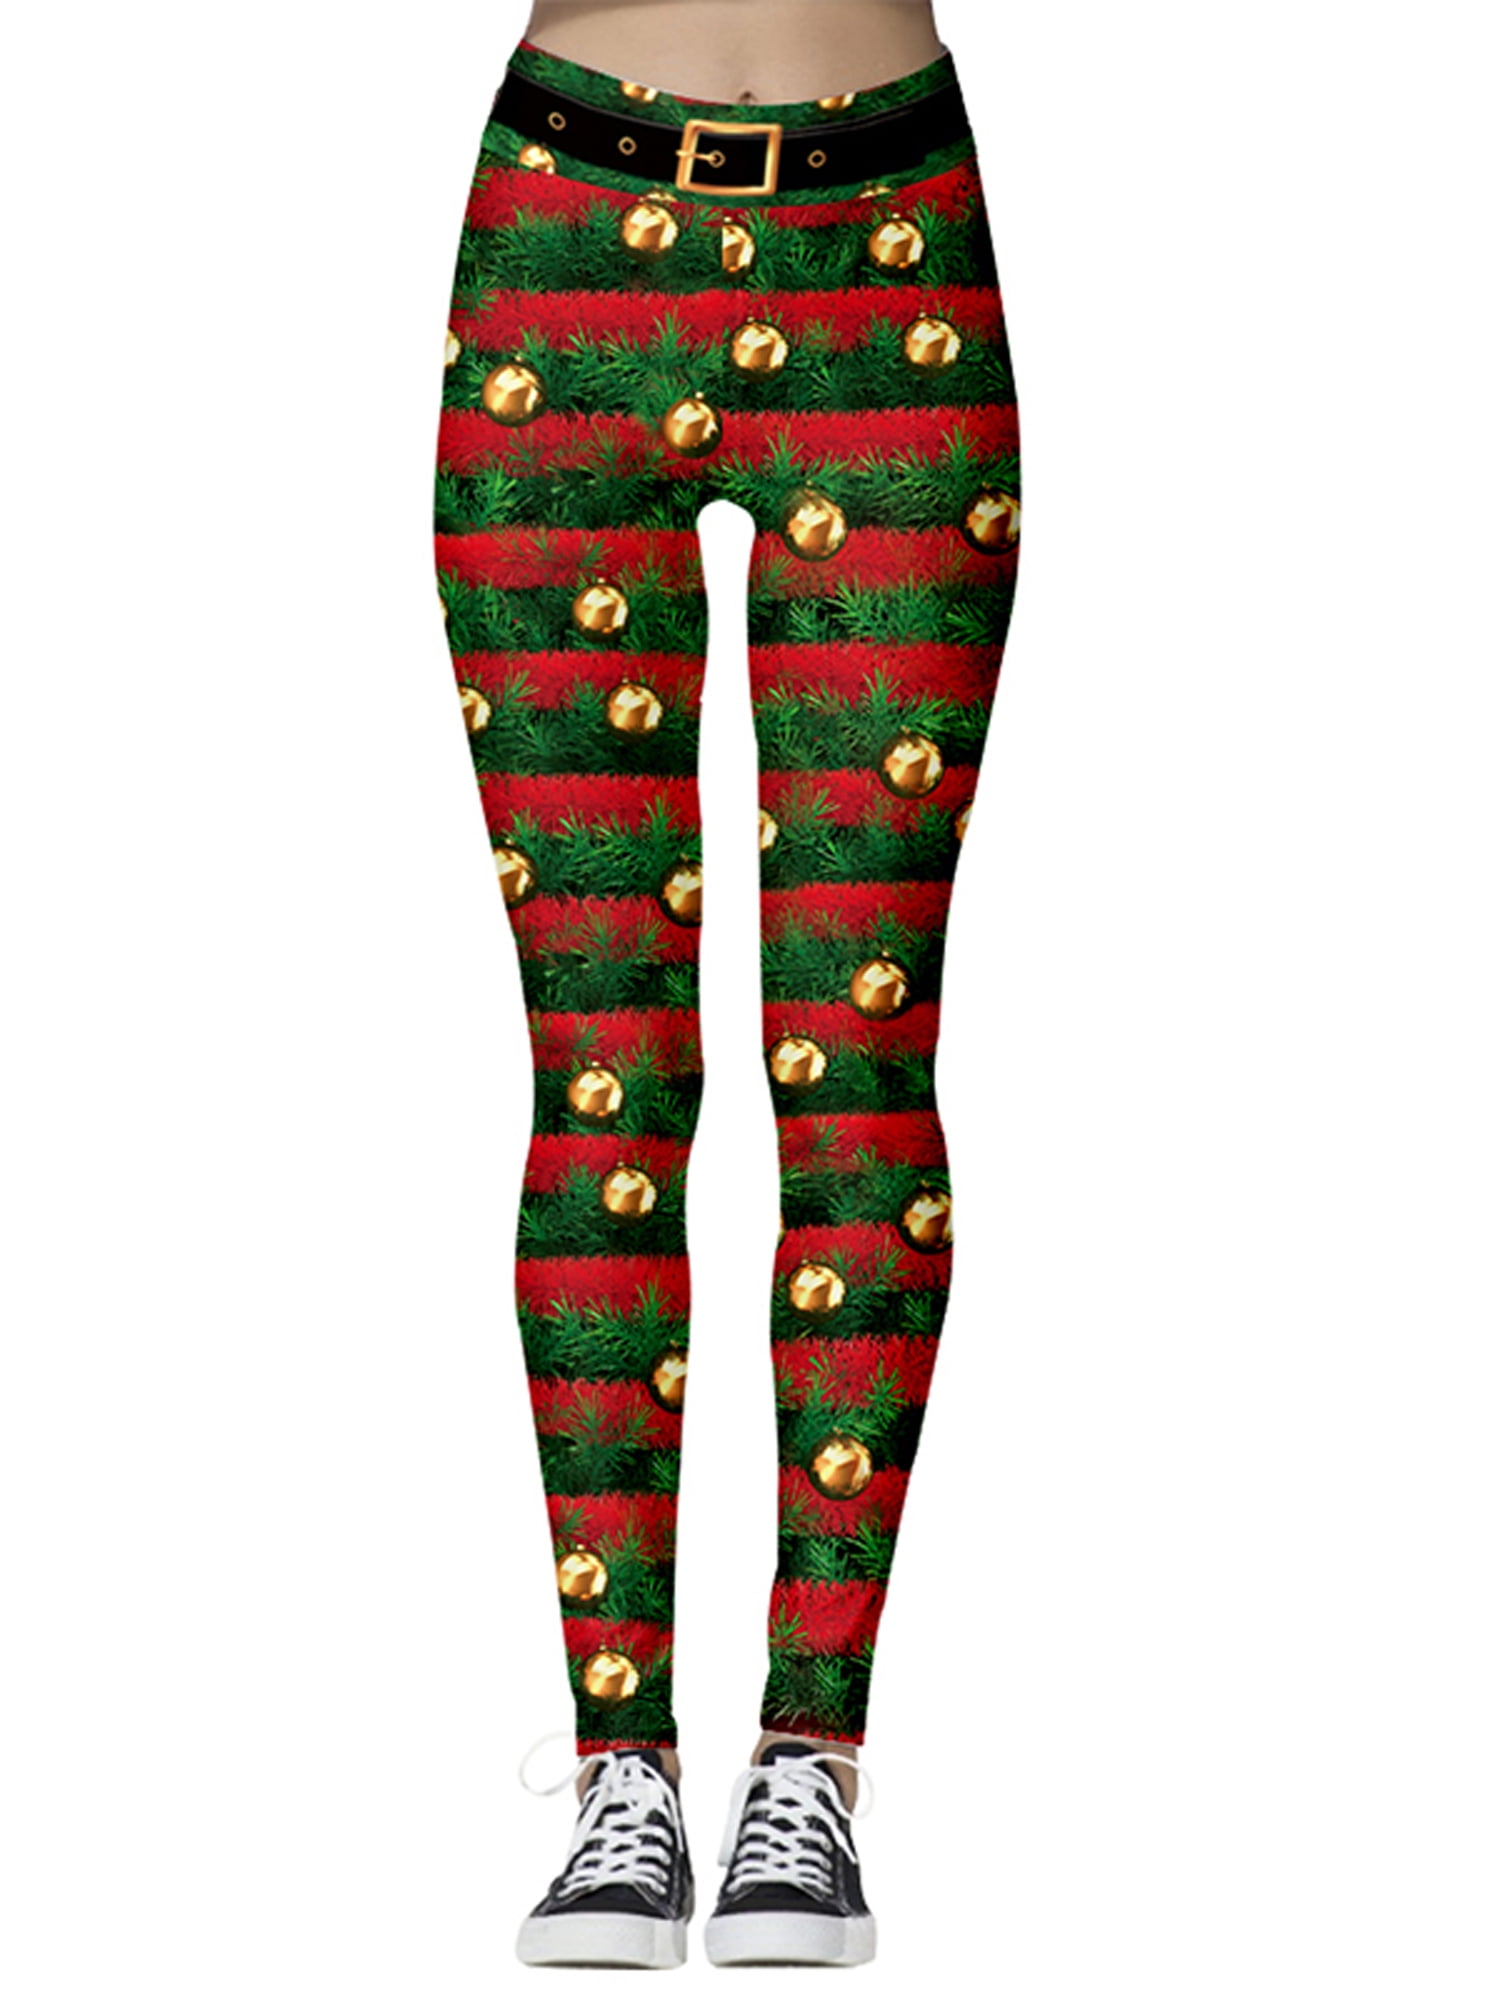 Lallc - Women's Christmas High Waist Pants Skinny Running Leggings Xmas ...